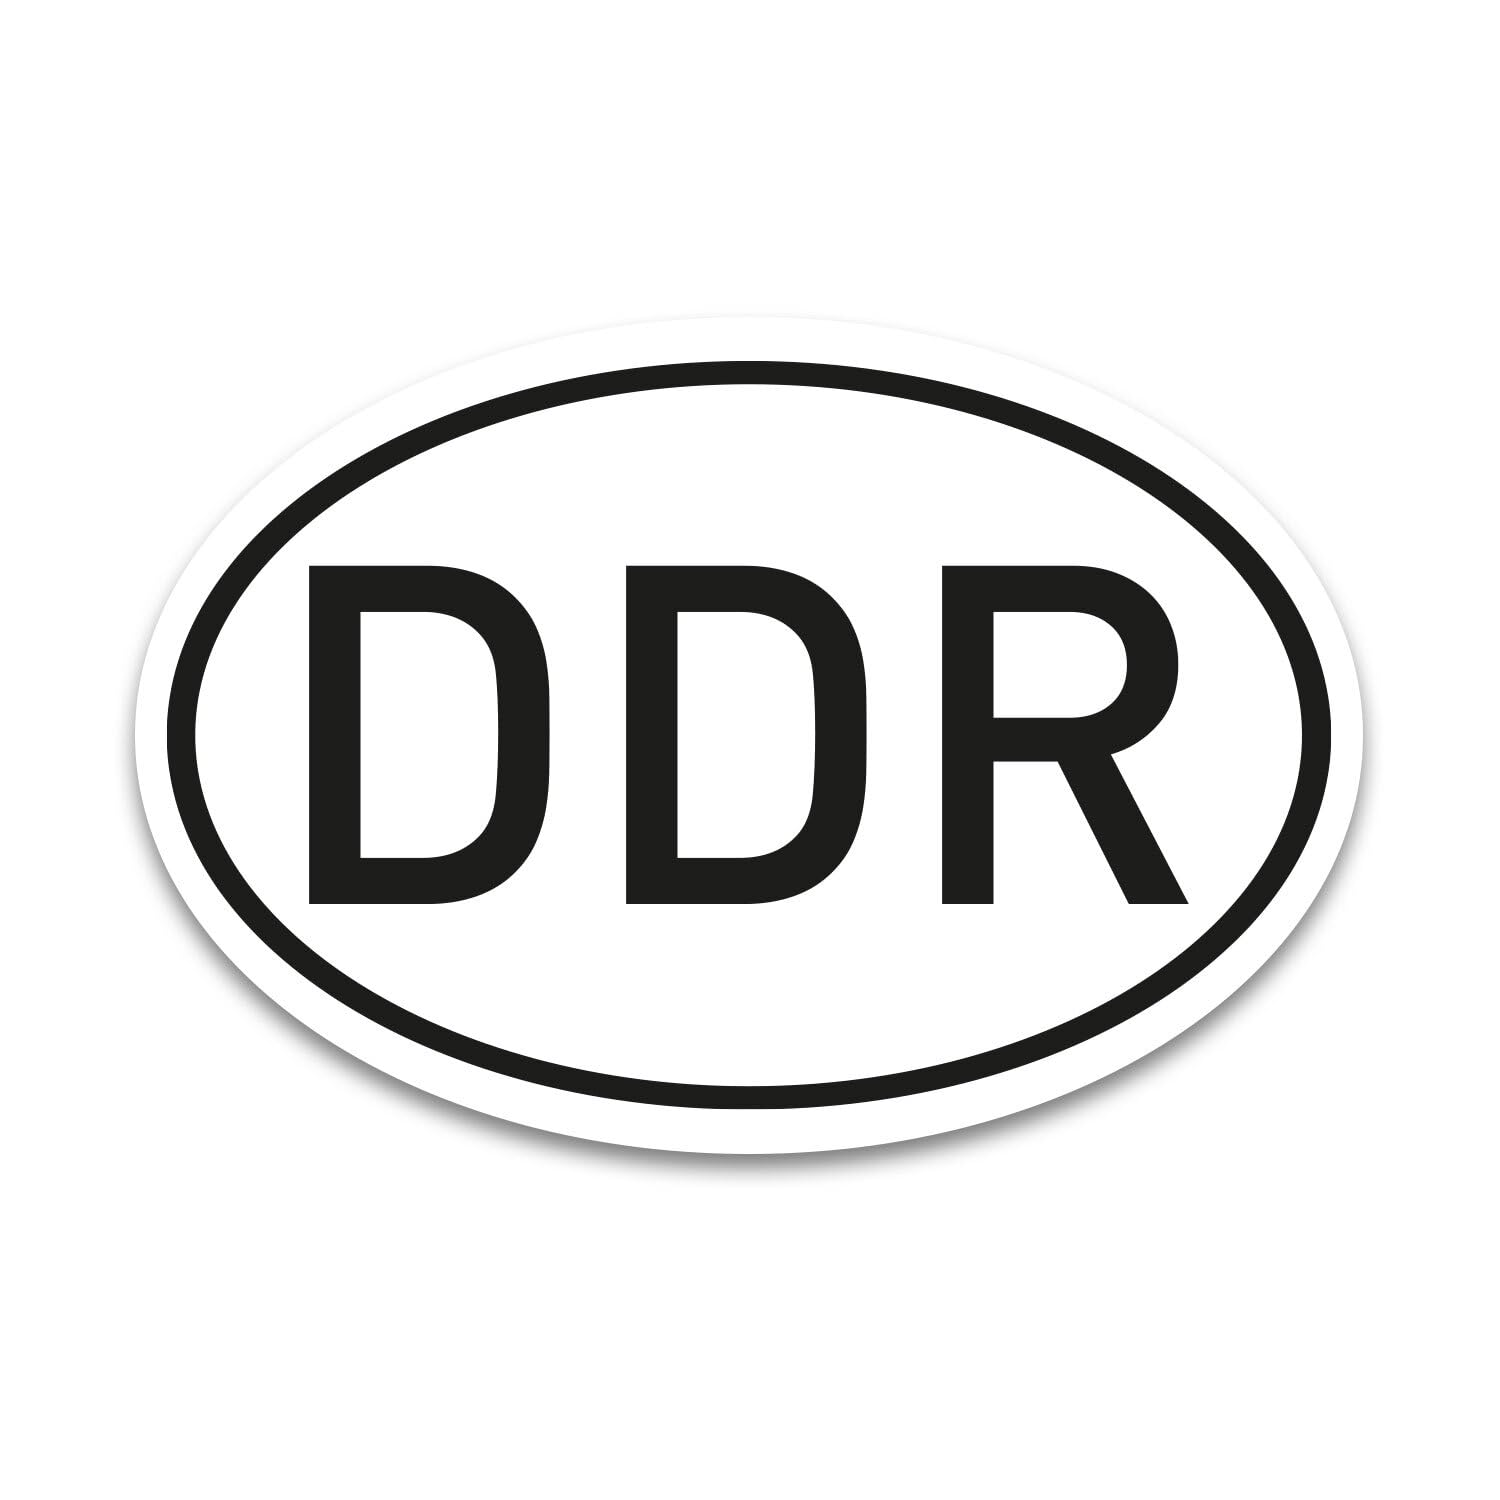 DDR Magnet Länderkennzeichen in Schwarz-Weiß - 17,5 x 11,5 cm DIN genormt - PKW LKW Wohnmobil Moped Motorrad Auto - UV-Schutzlaminiert und Wetterfest - kfz_729 von iSecur